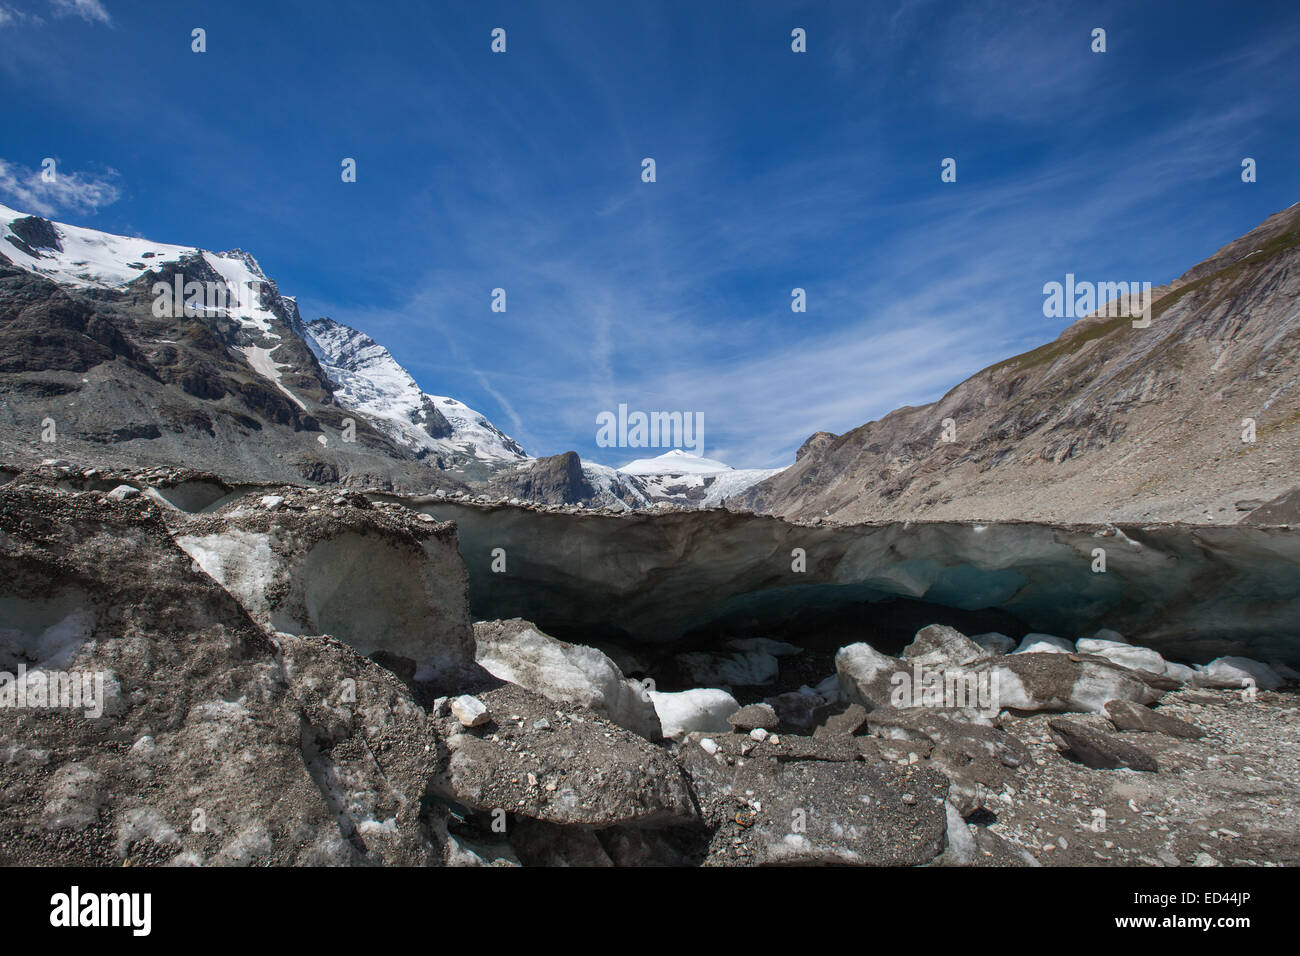 La fonte des glaciers de montagne due au réchauffement climatique. Banque D'Images